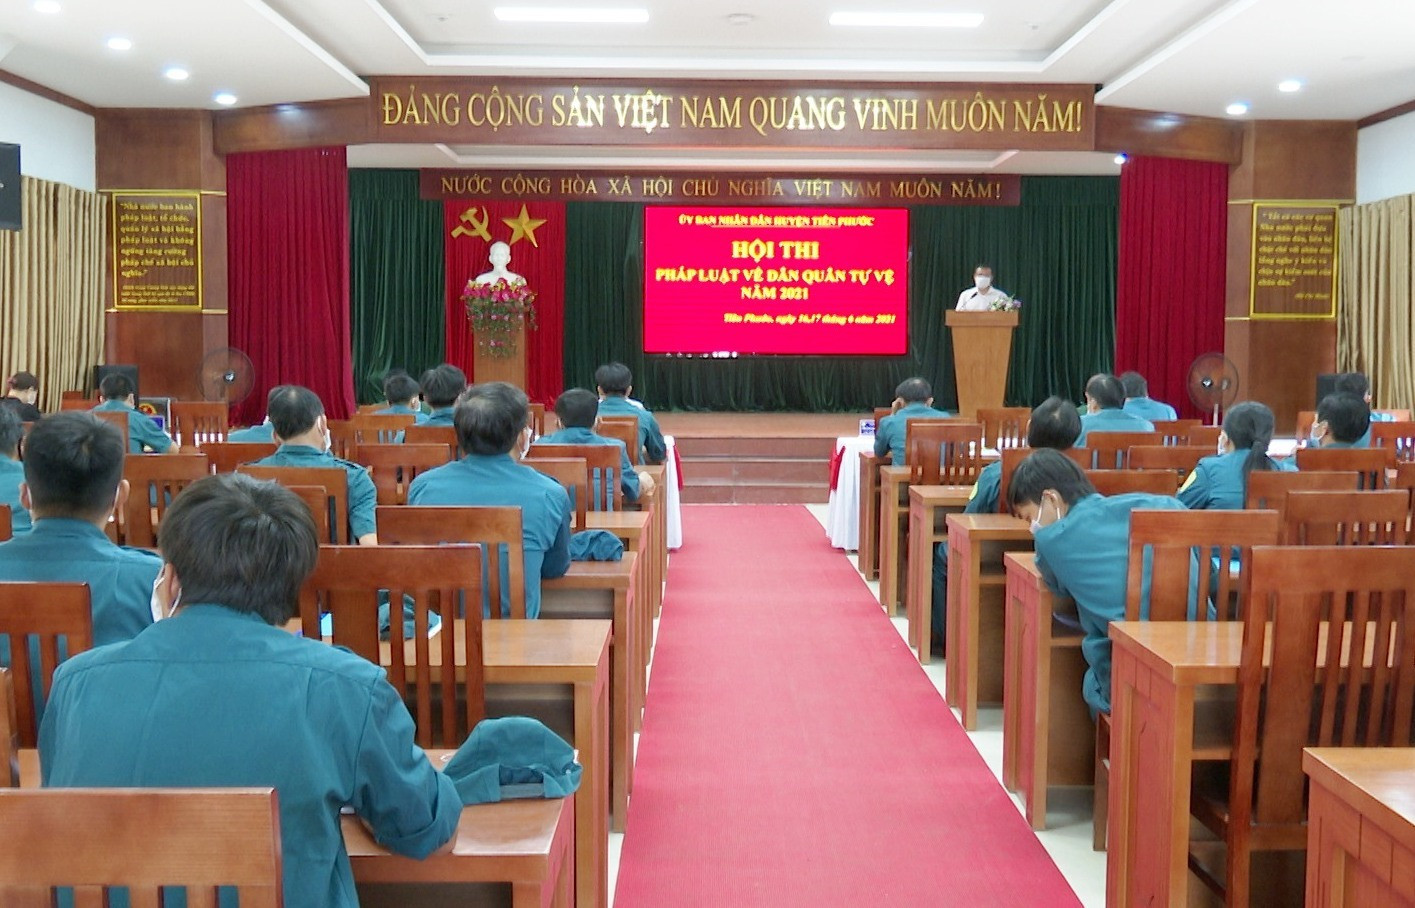 Tiên Phước tổ chức hội thi pháp luật về Dân quân tự vệ năm 2021